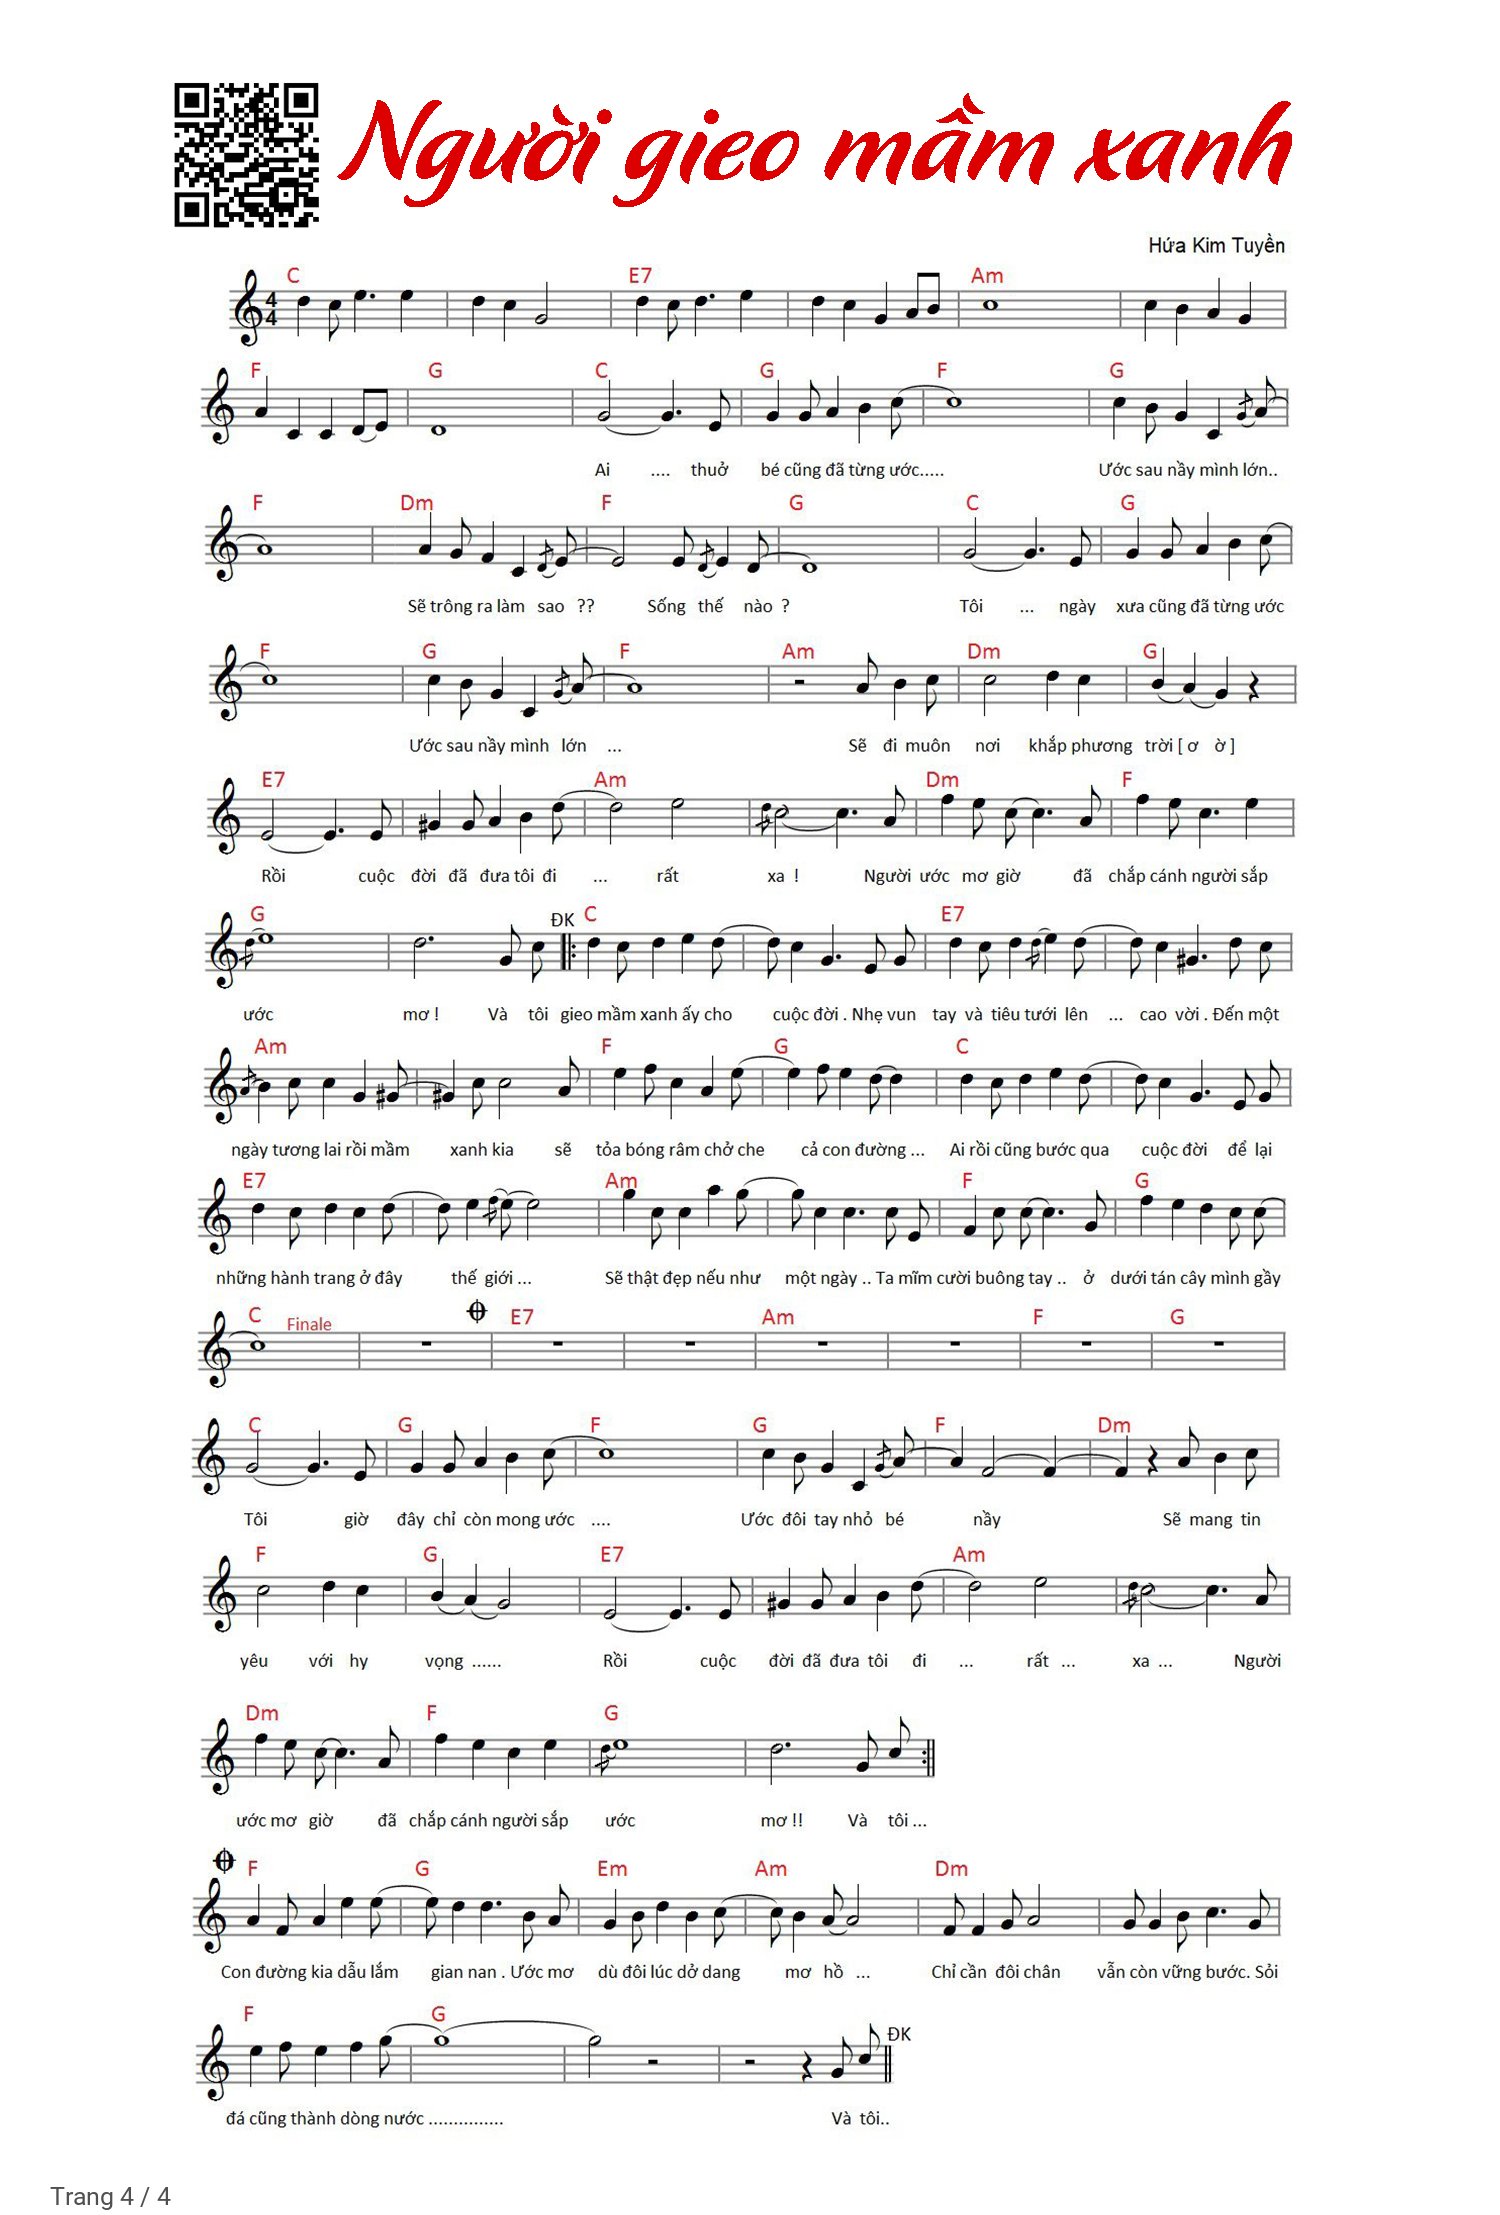 Trang 4 của Sheet nhạc PDF Piano bài hát Người gieo mầm xanh - Hứa Kim Tuyền